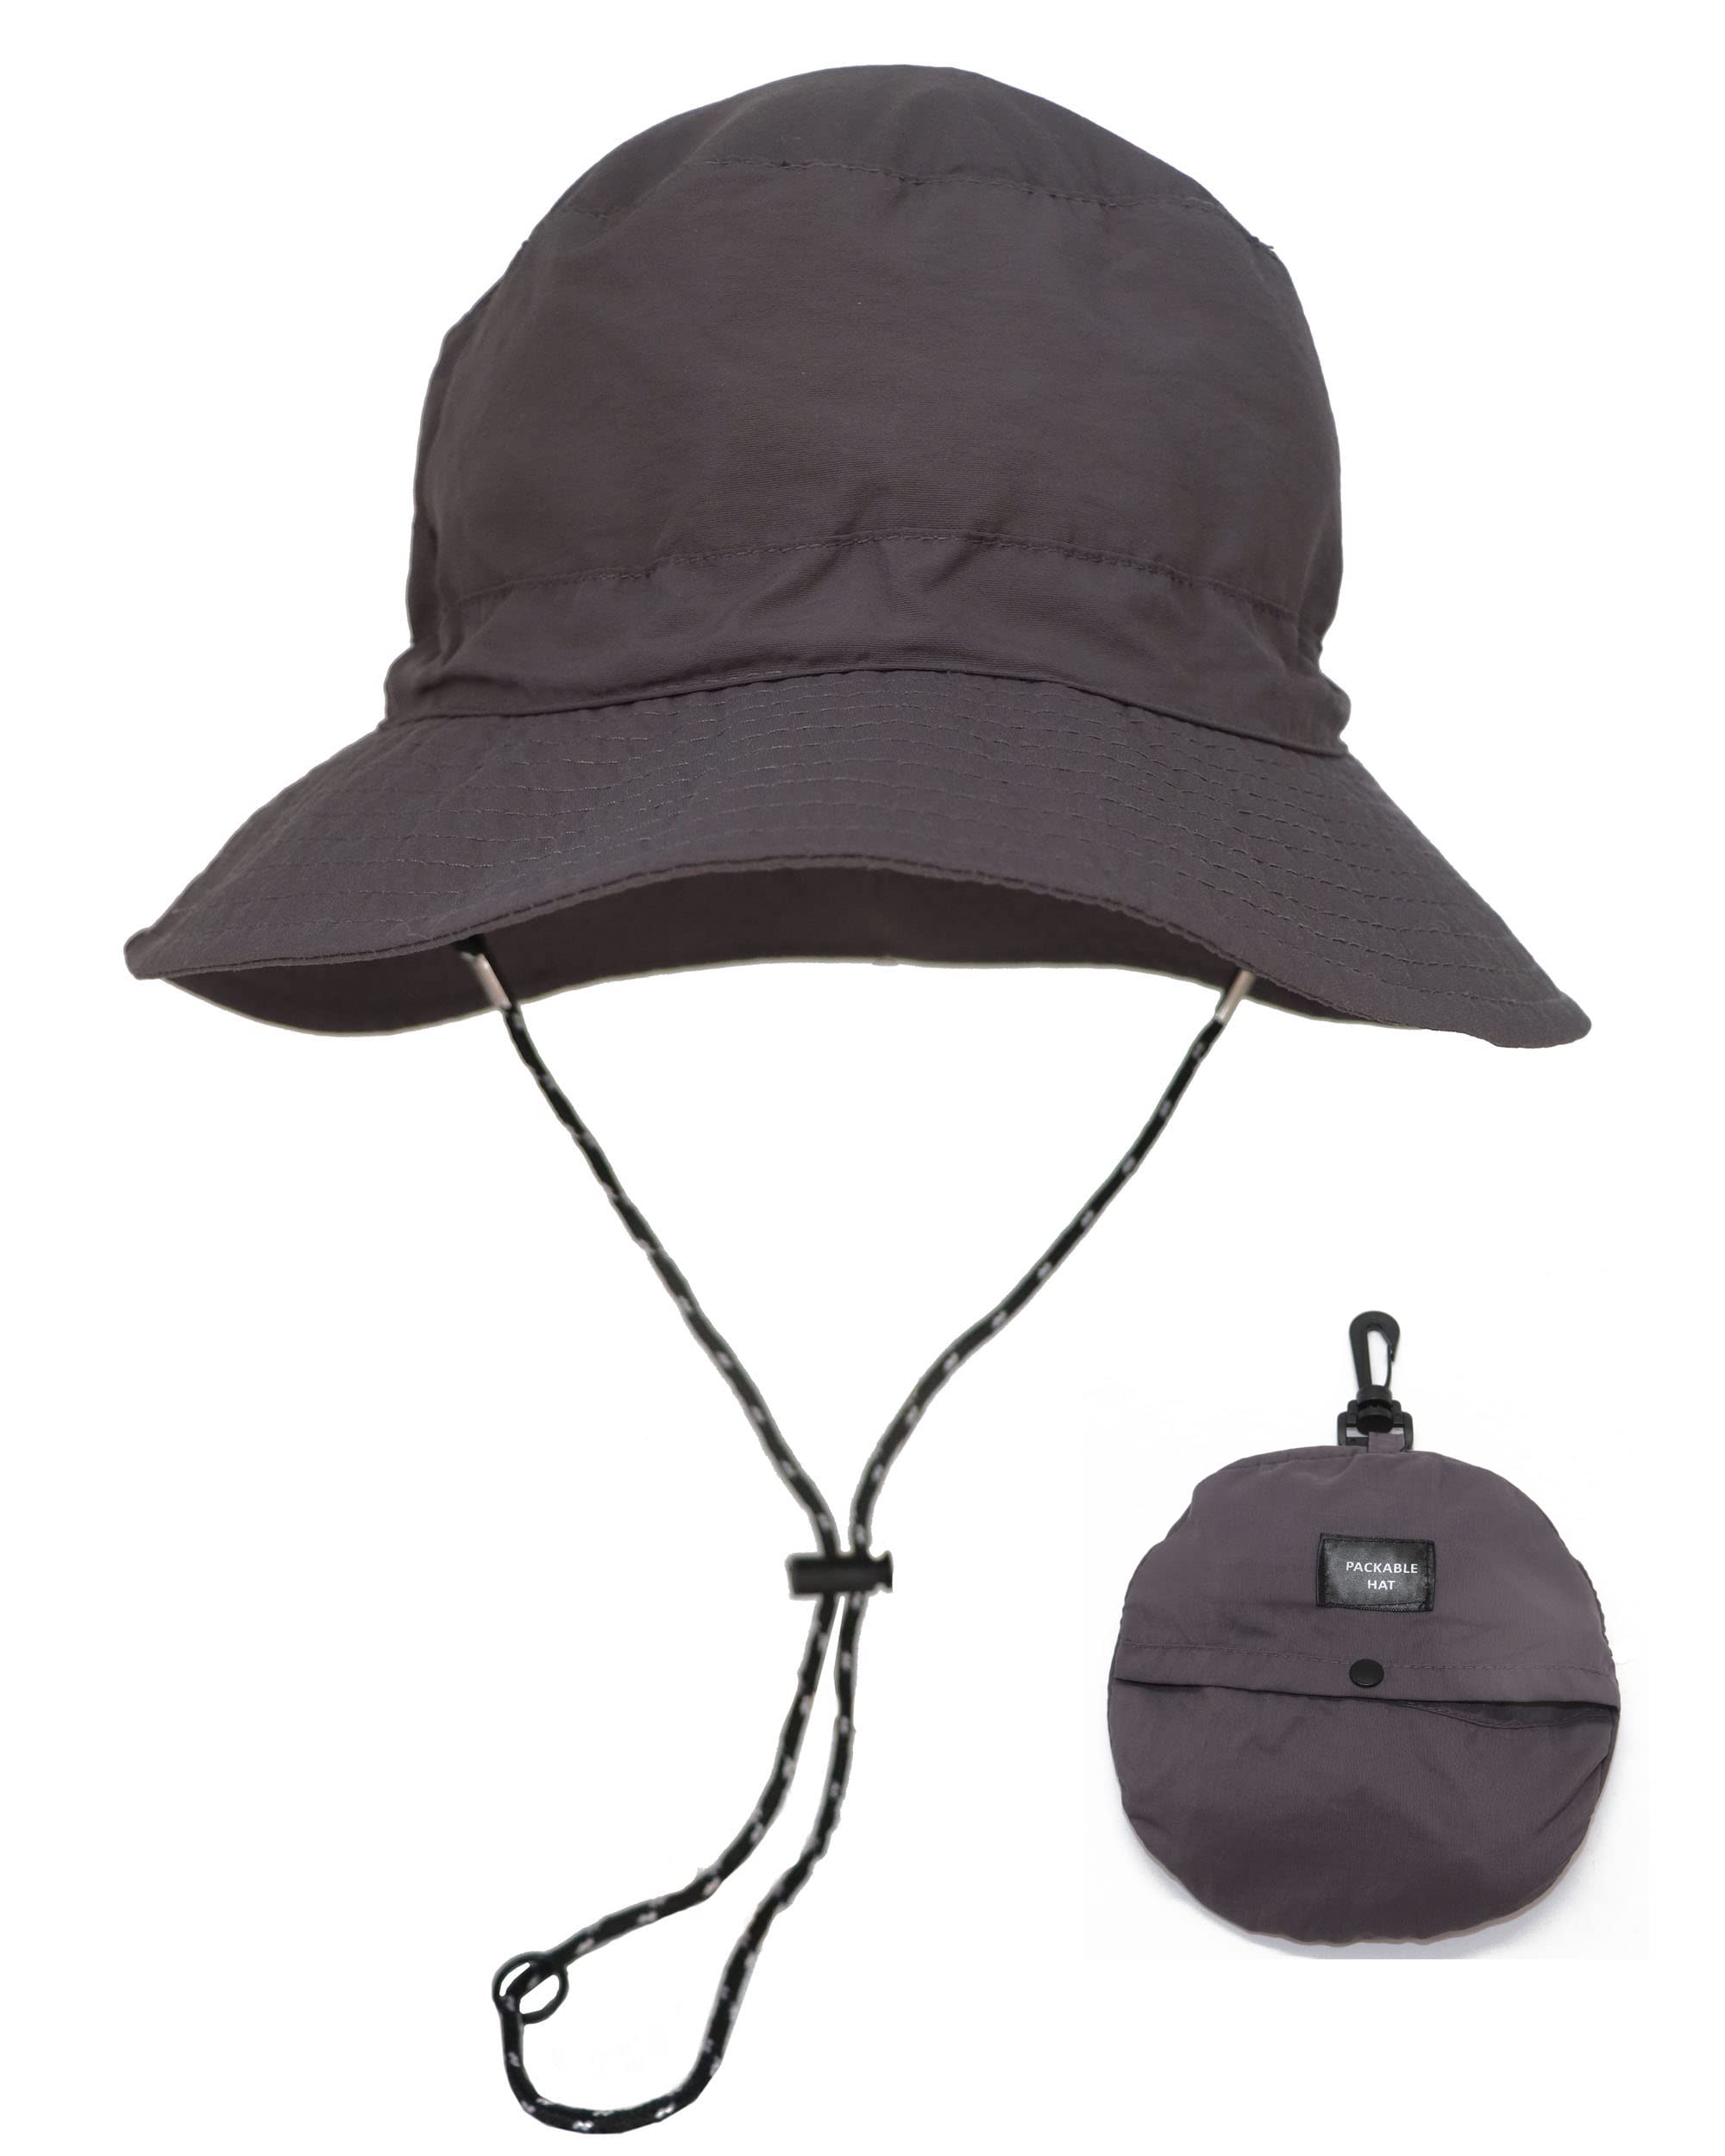 CAMSTIC Packable Sun Protection Waterproof Outdoor Bucket Hat Grey